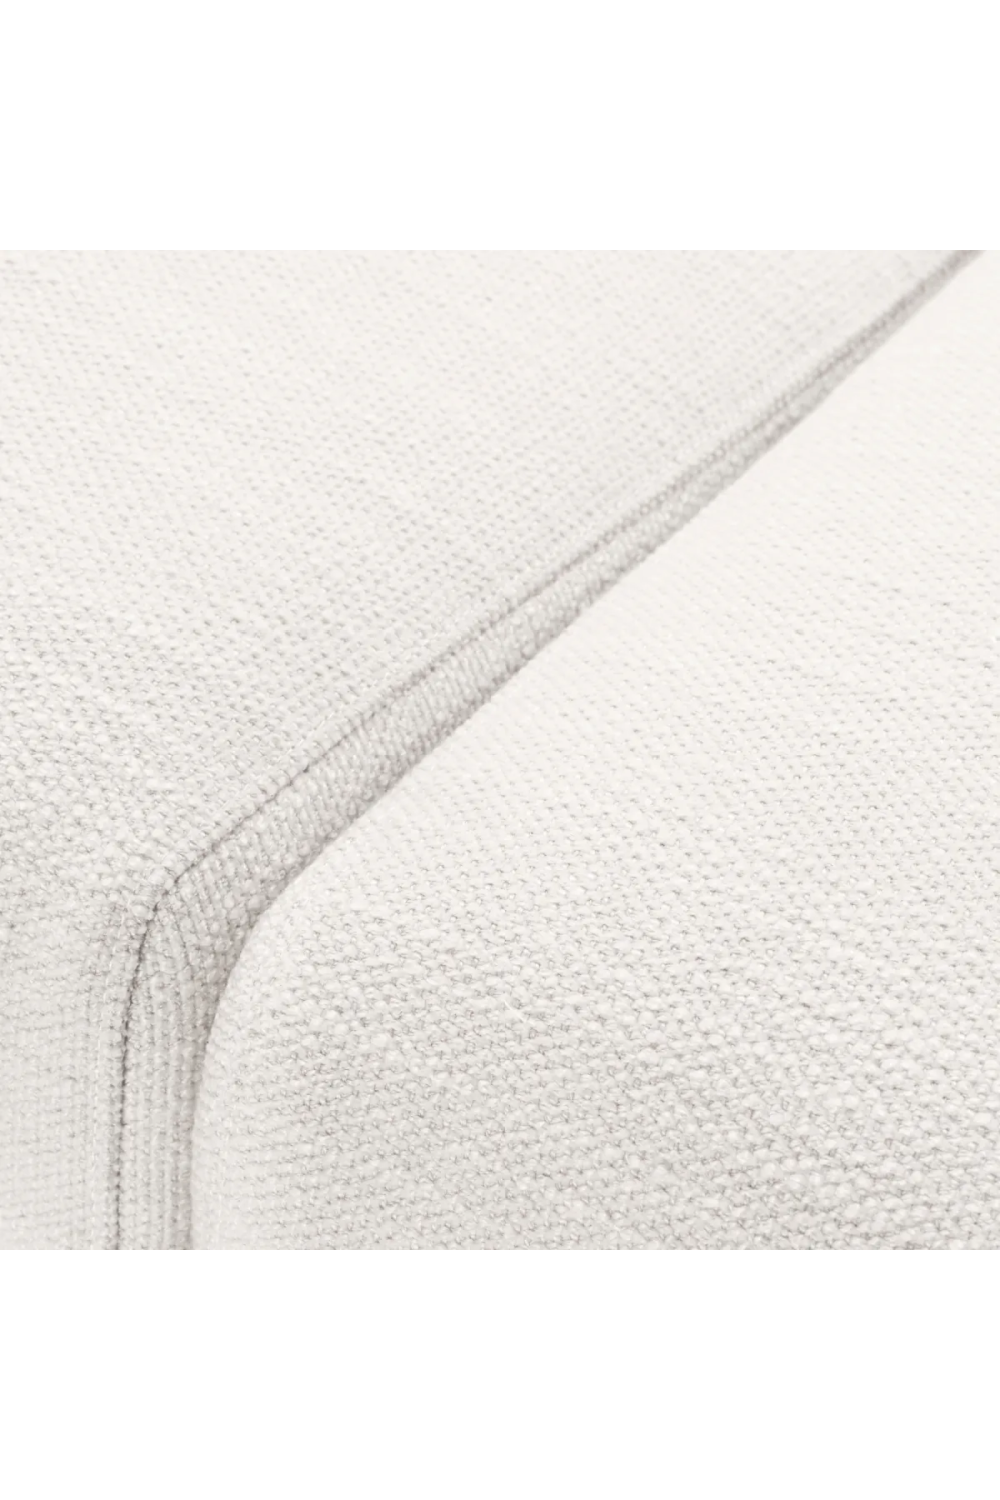 White Minimalist Sofa | Eichholtz Taylor | Oroa.com